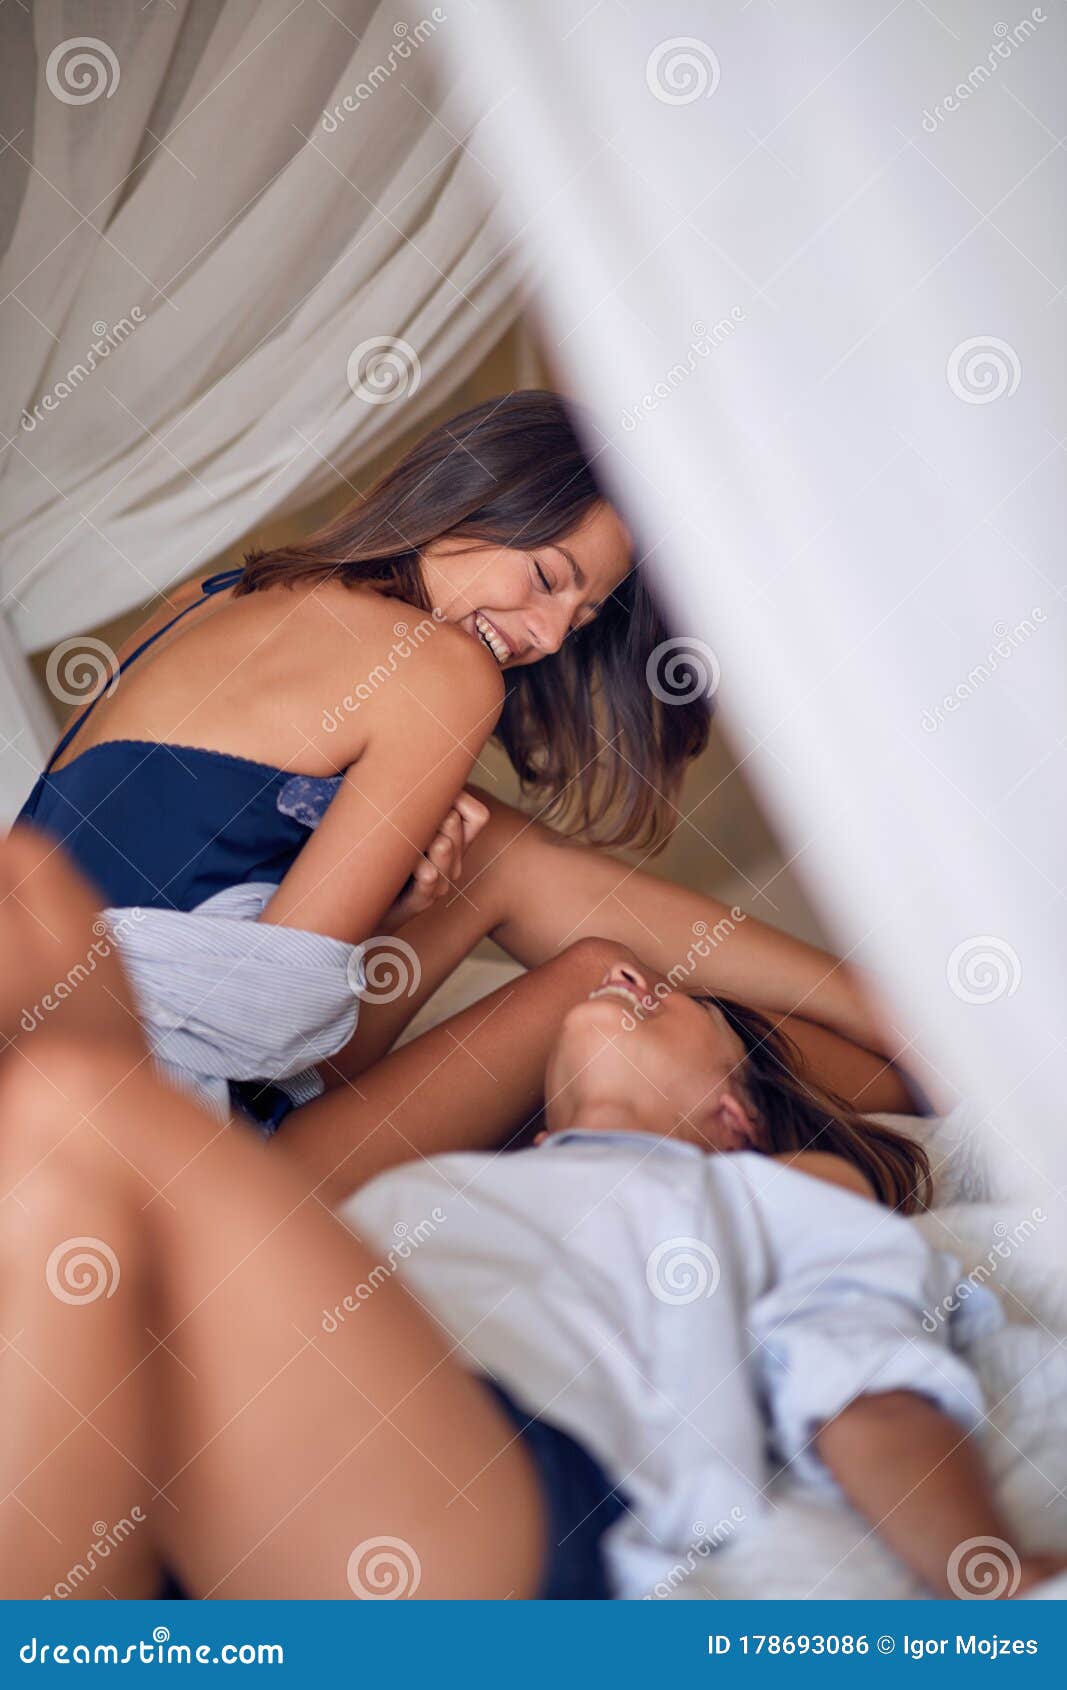 Lésbicas se beijando na cama